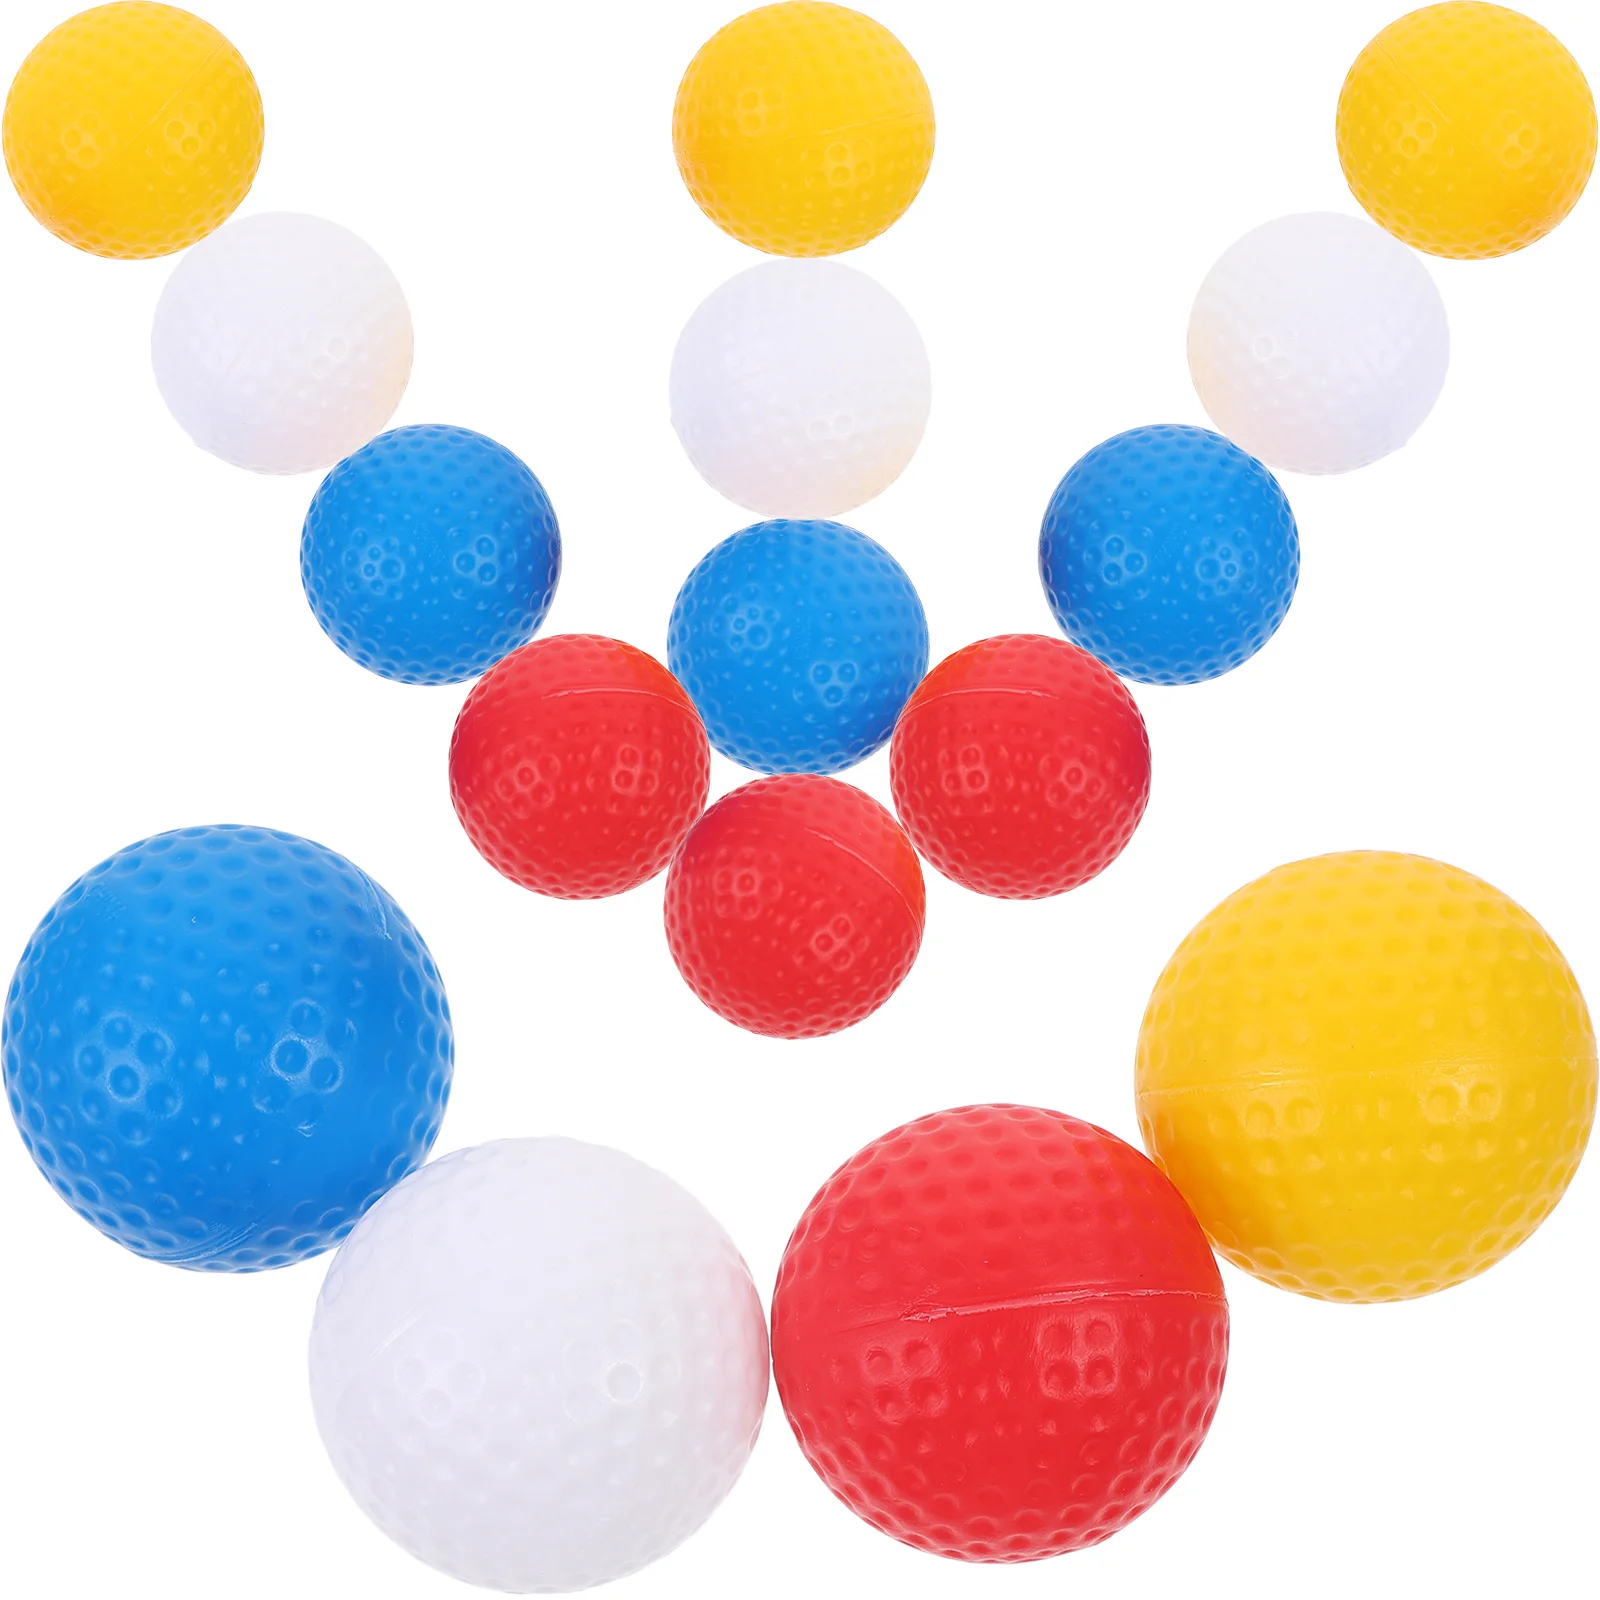 Мячи для игры в гольф, Цветные мячи для гольфа, маленькие мячи для гольфа, портативные мячи для игры в гольф регулируемый держатель для тройника для гольфа 1 шт пластмассовые принадлежности для тренировок для игры в гольф